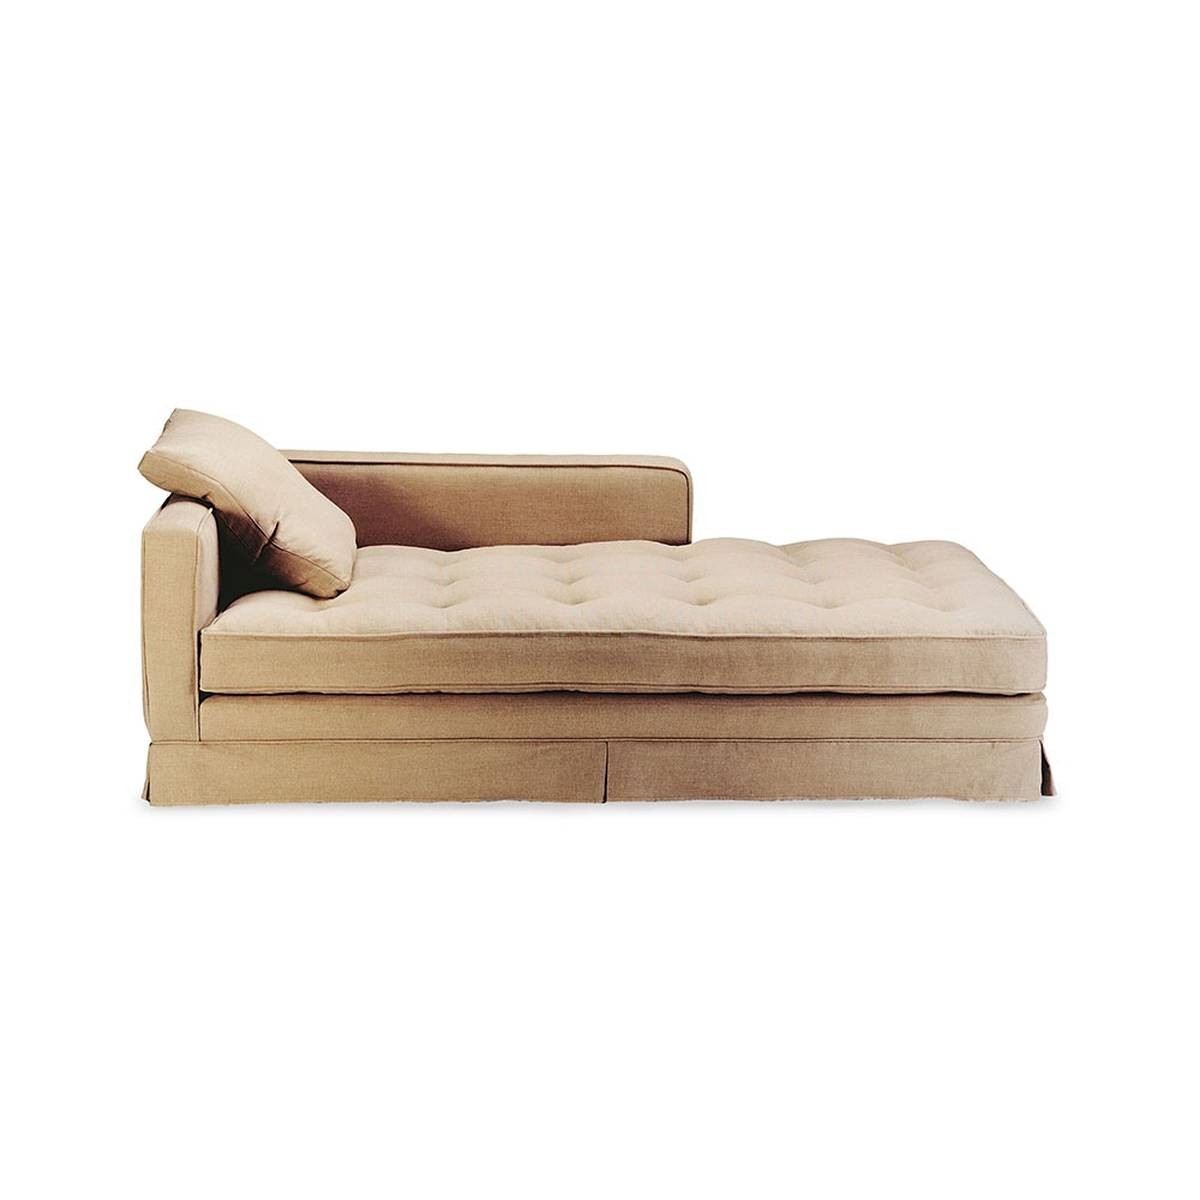 Оттоманки Dali/day-bed из Испании фабрики MANUEL LARRAGA